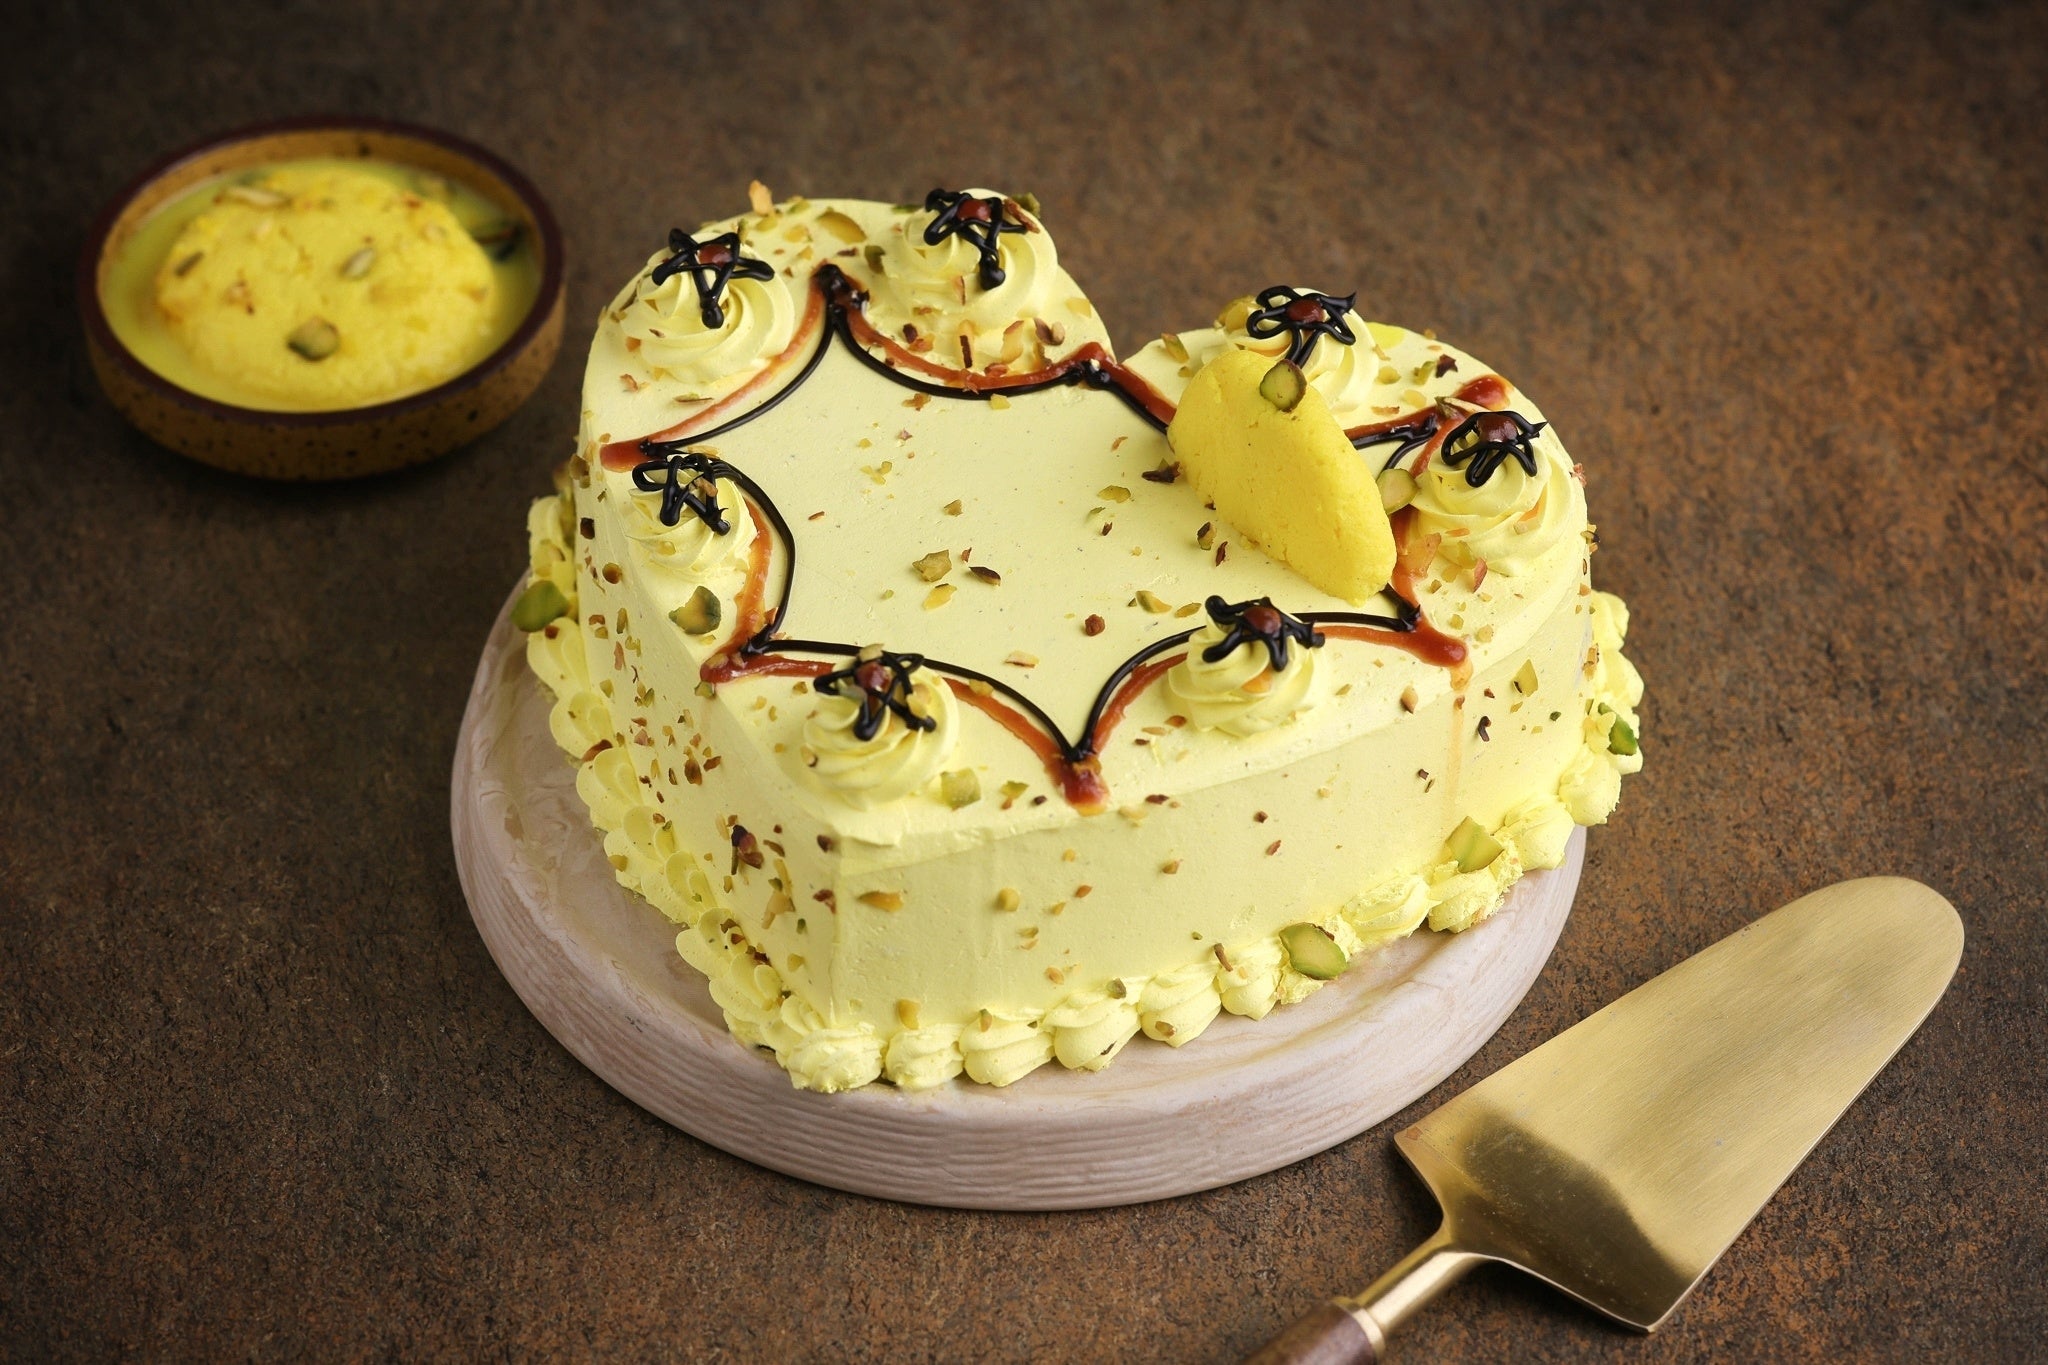 Chanda Rozario on Instagram: “Rasmalai cake ❤️ #cake #rasmalai #rasmalaicake  #indianfusioncake #loadedwithnuts #… | Rasmalai cake recipe, Happy birthday  cakes, Cake